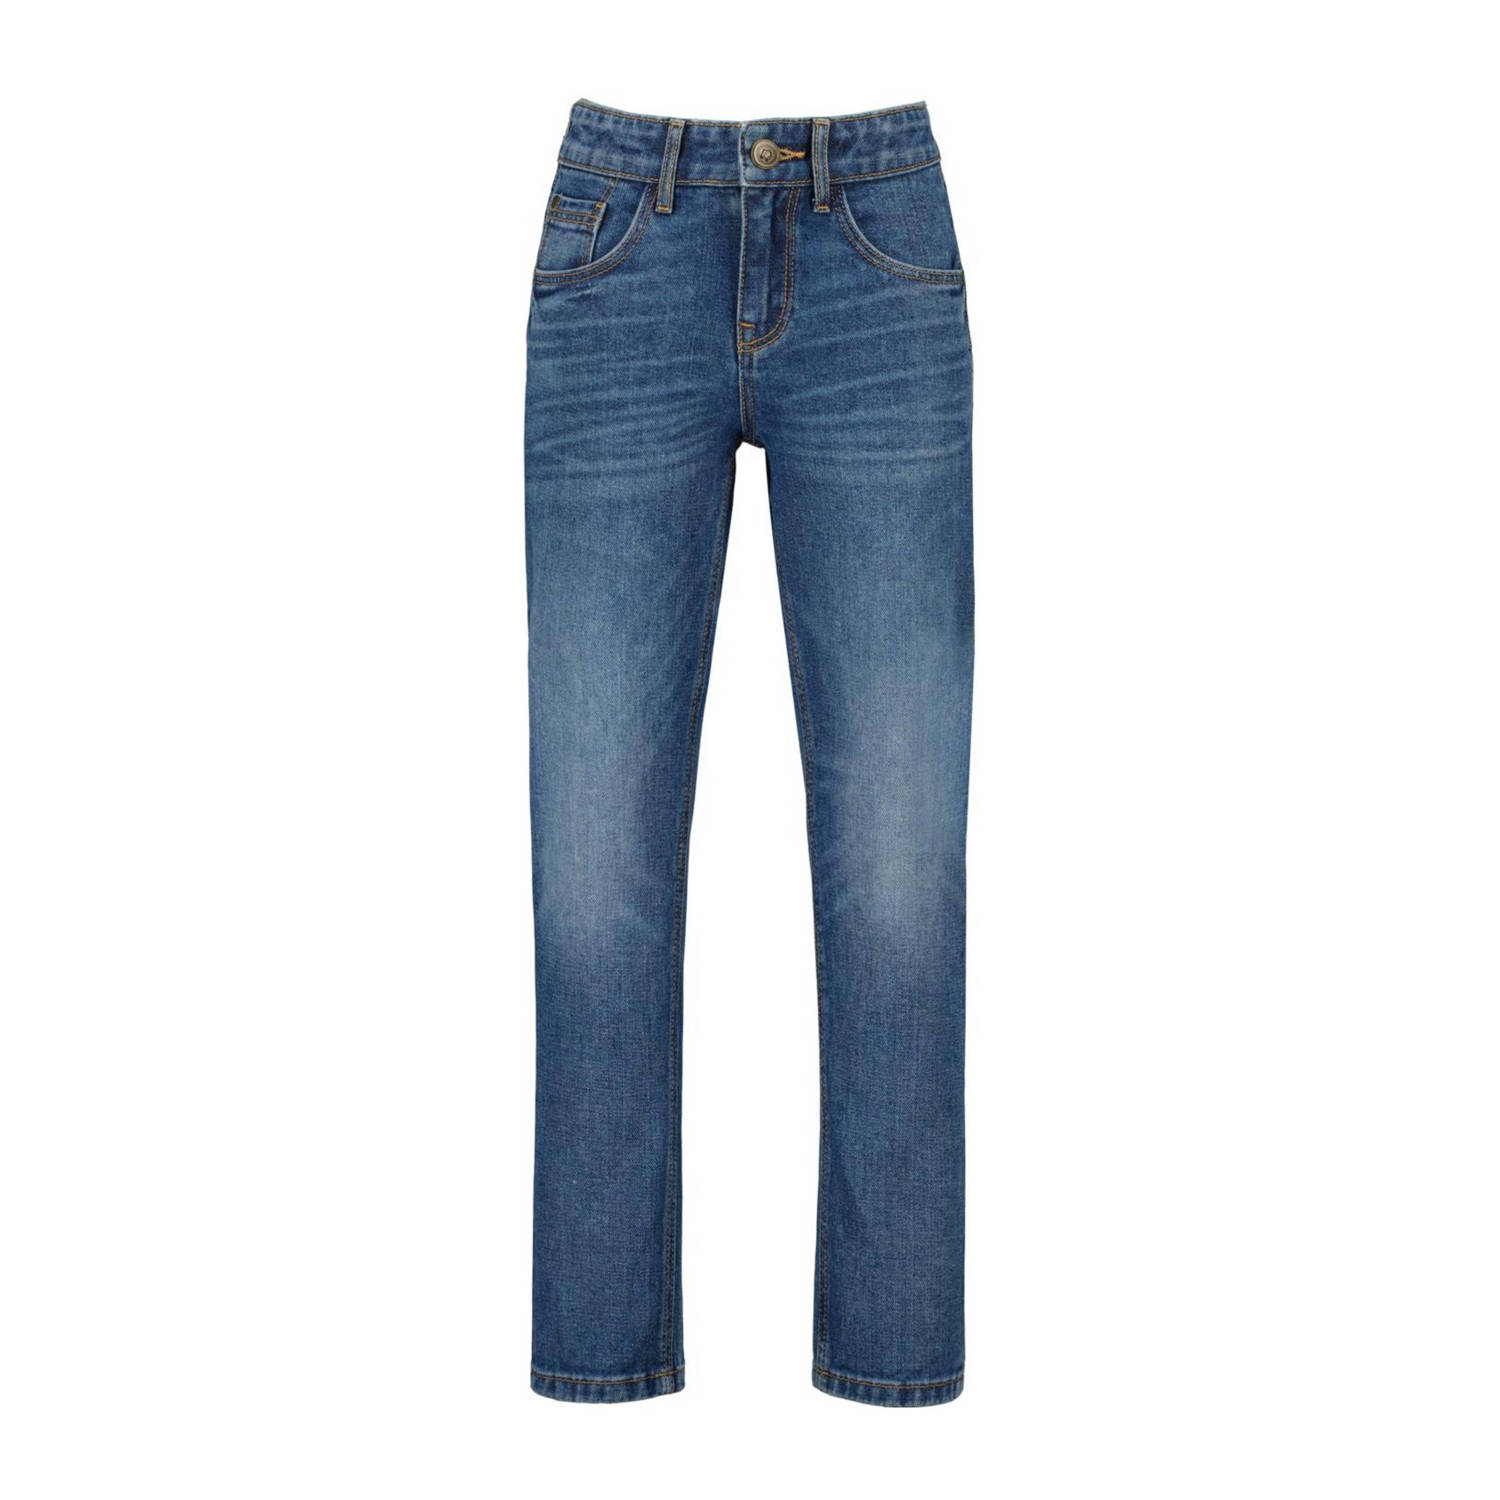 Raizzed straight fit jeans Dallas light blue stone Blauw Jongens Denim 128